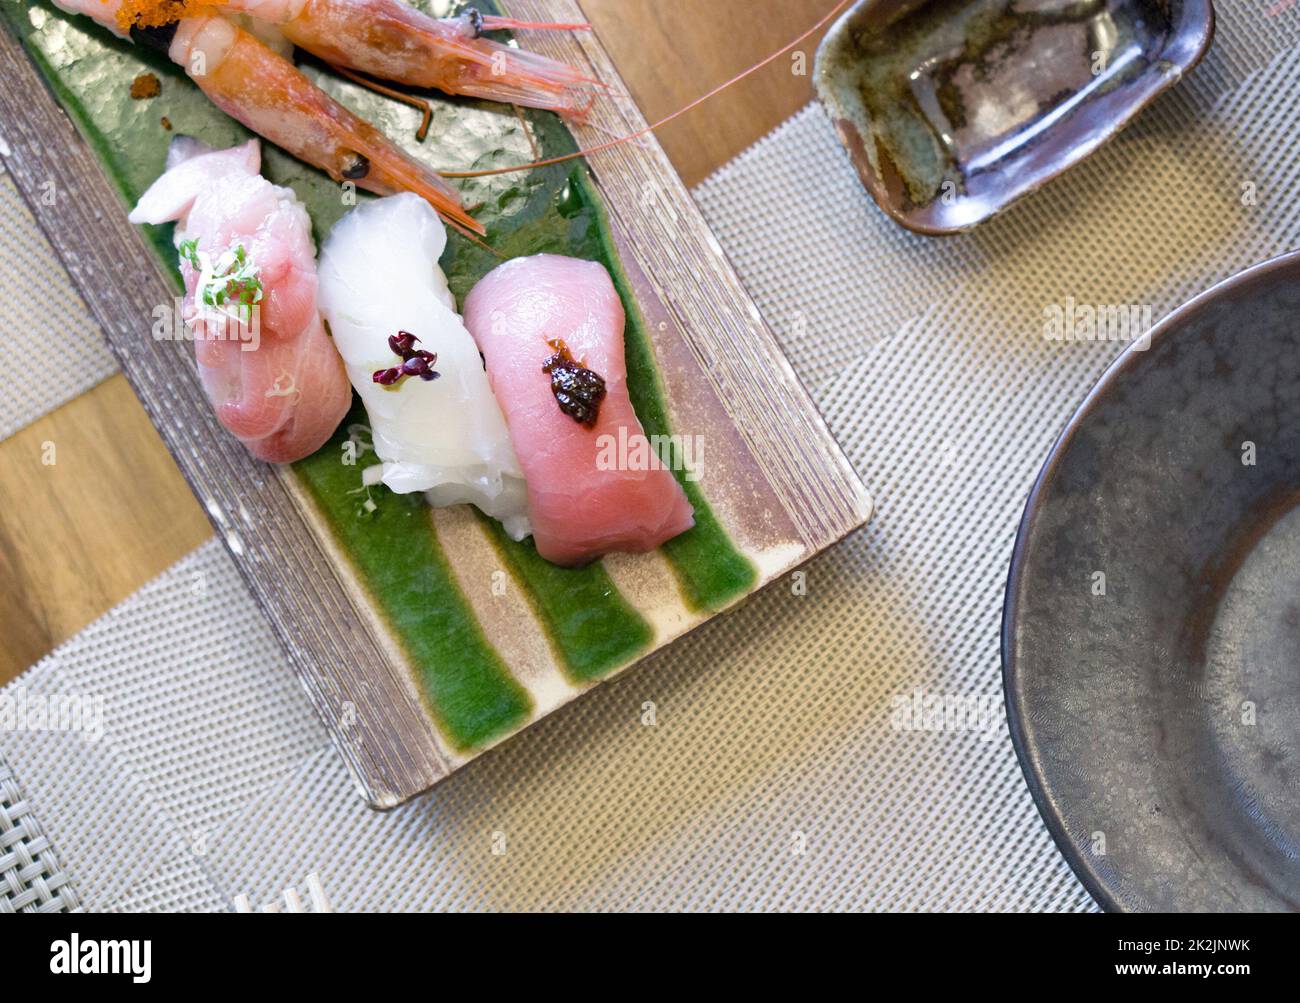 Le sushi est magnifiquement disposé sur une plaque en céramique. Buffet de cuisine japonaise. Choix du chef : crevettes, thon, Nodoguro et KINKI Banque D'Images